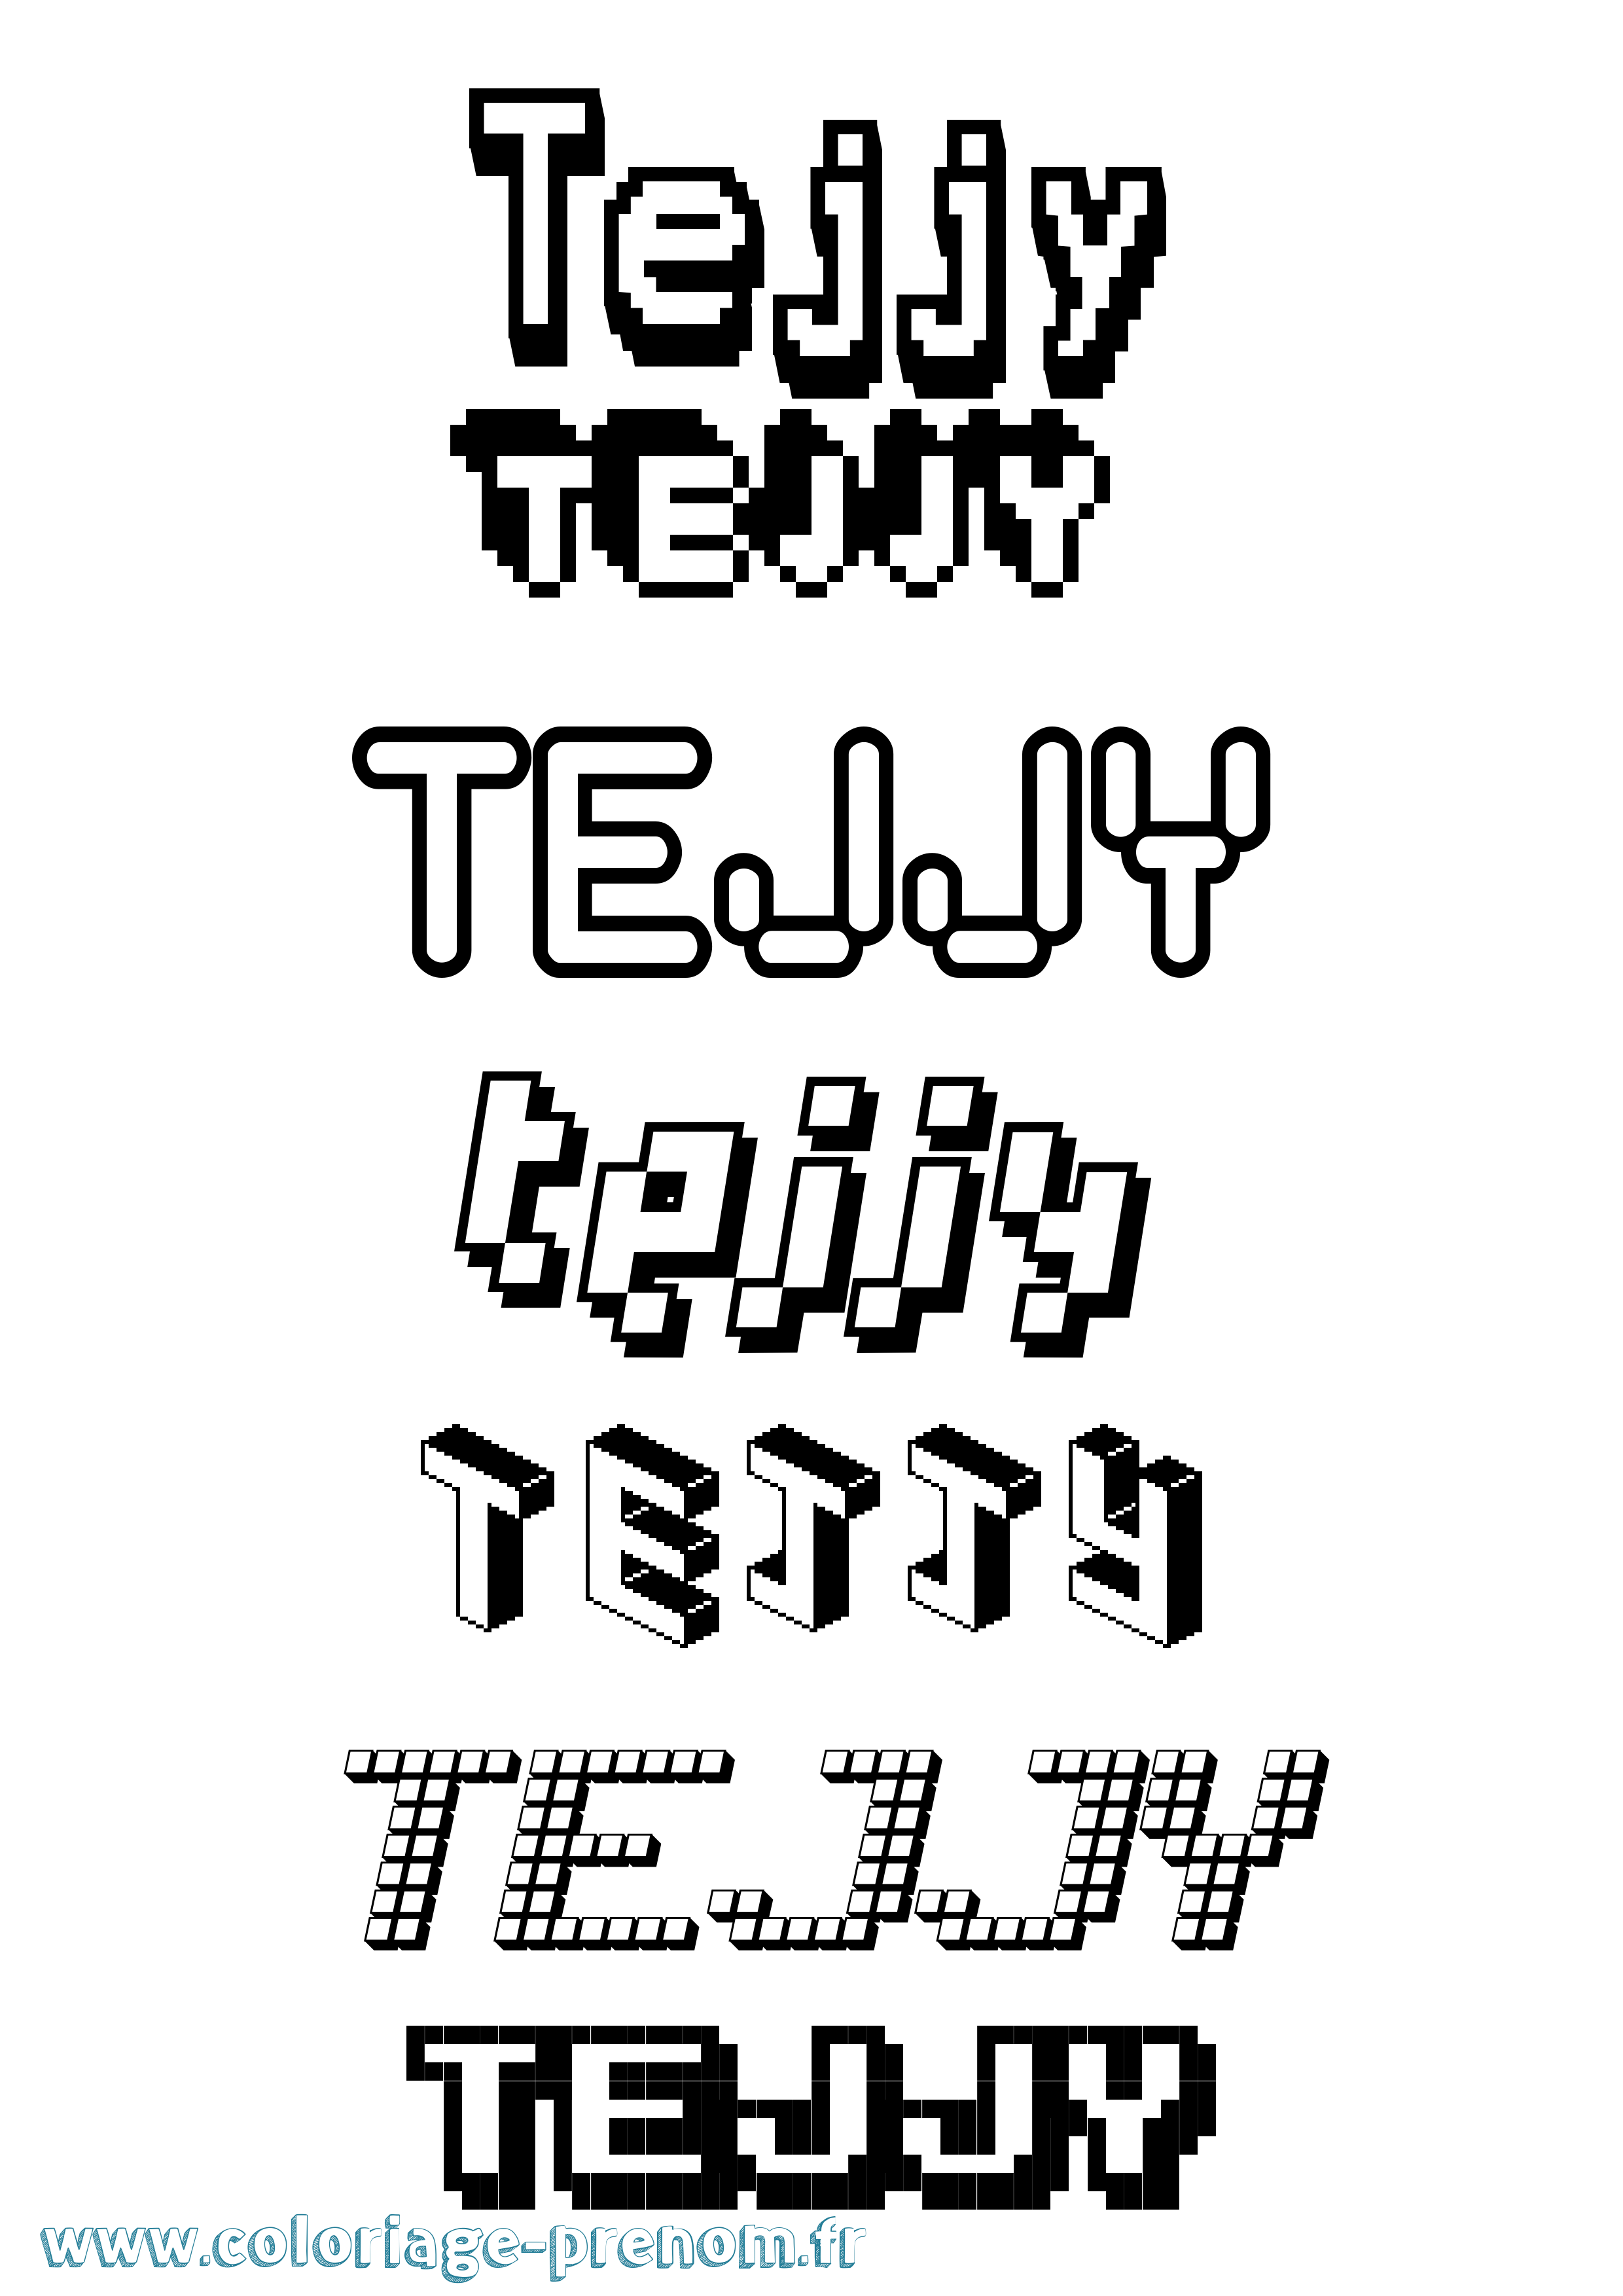 Coloriage prénom Tejjy Pixel